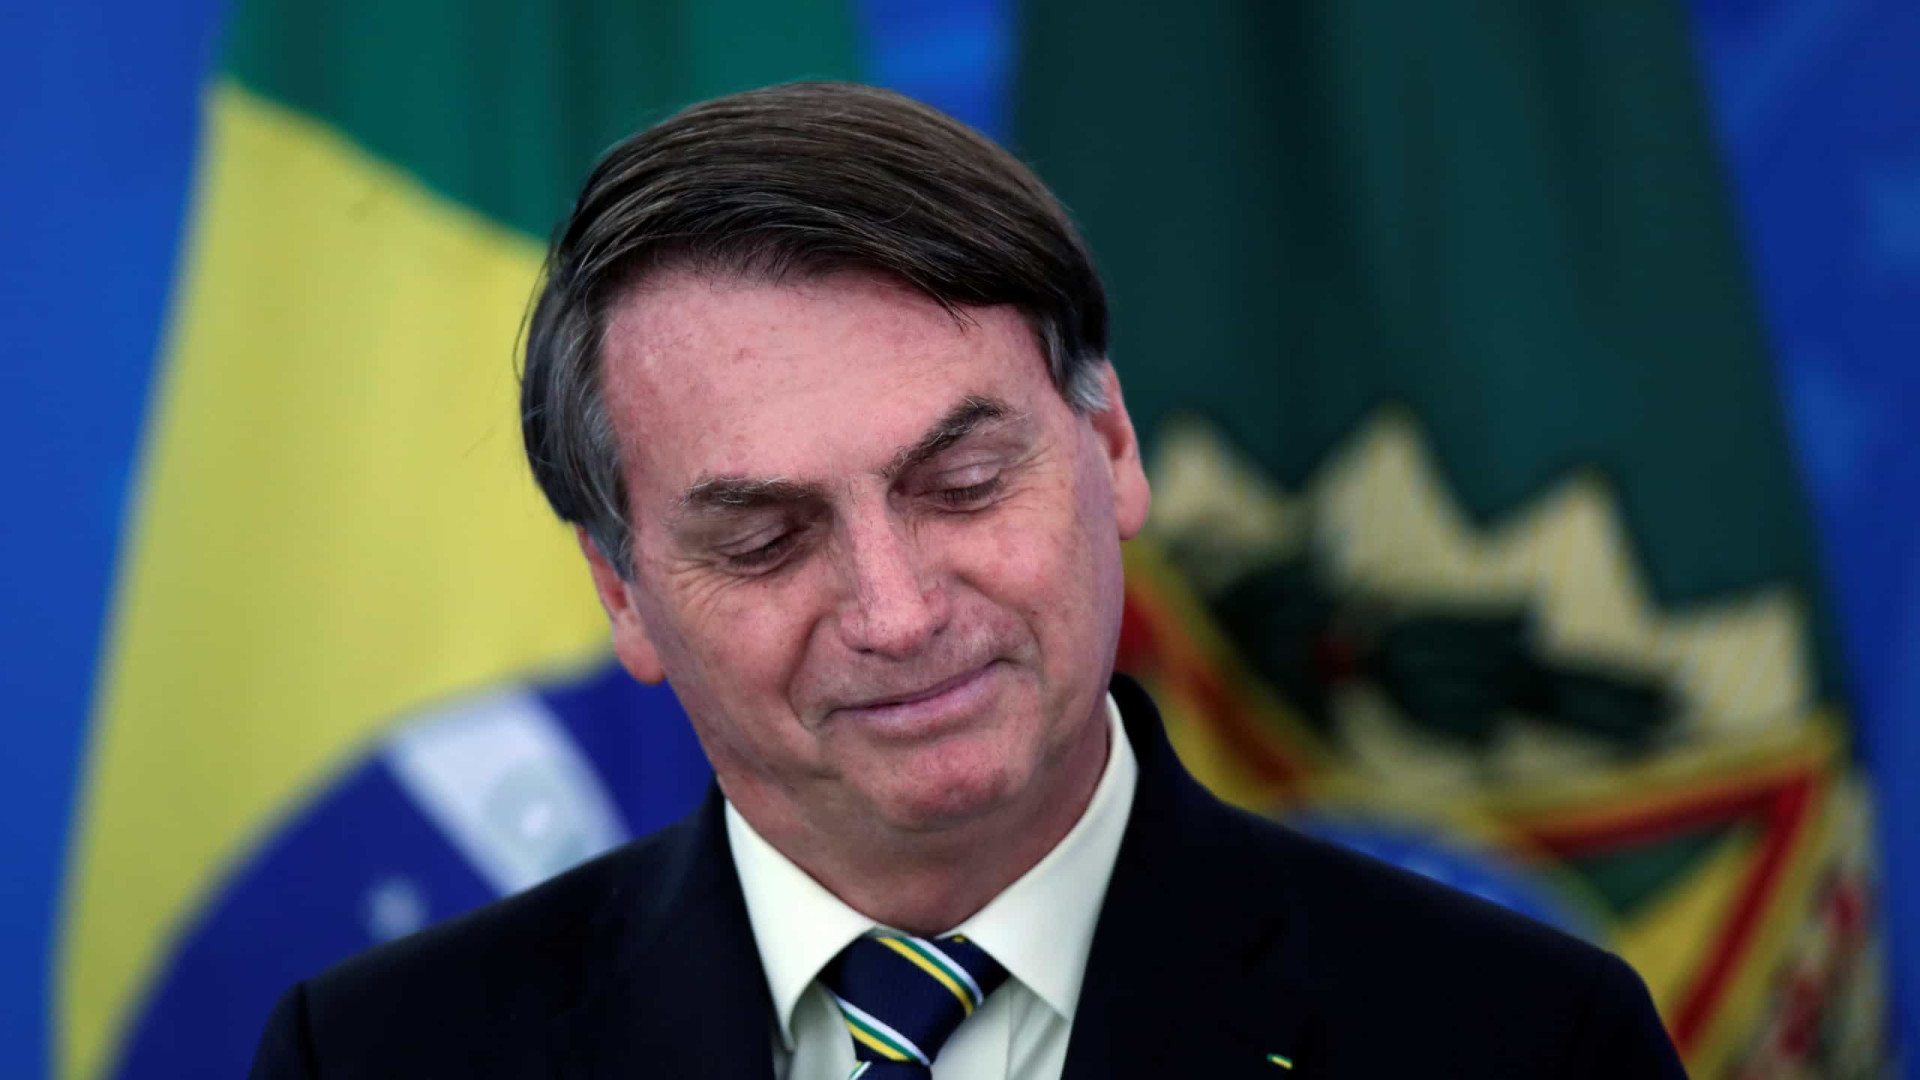 Mulher pede reabertura do comércio e recebe apoio de Bolsonaro